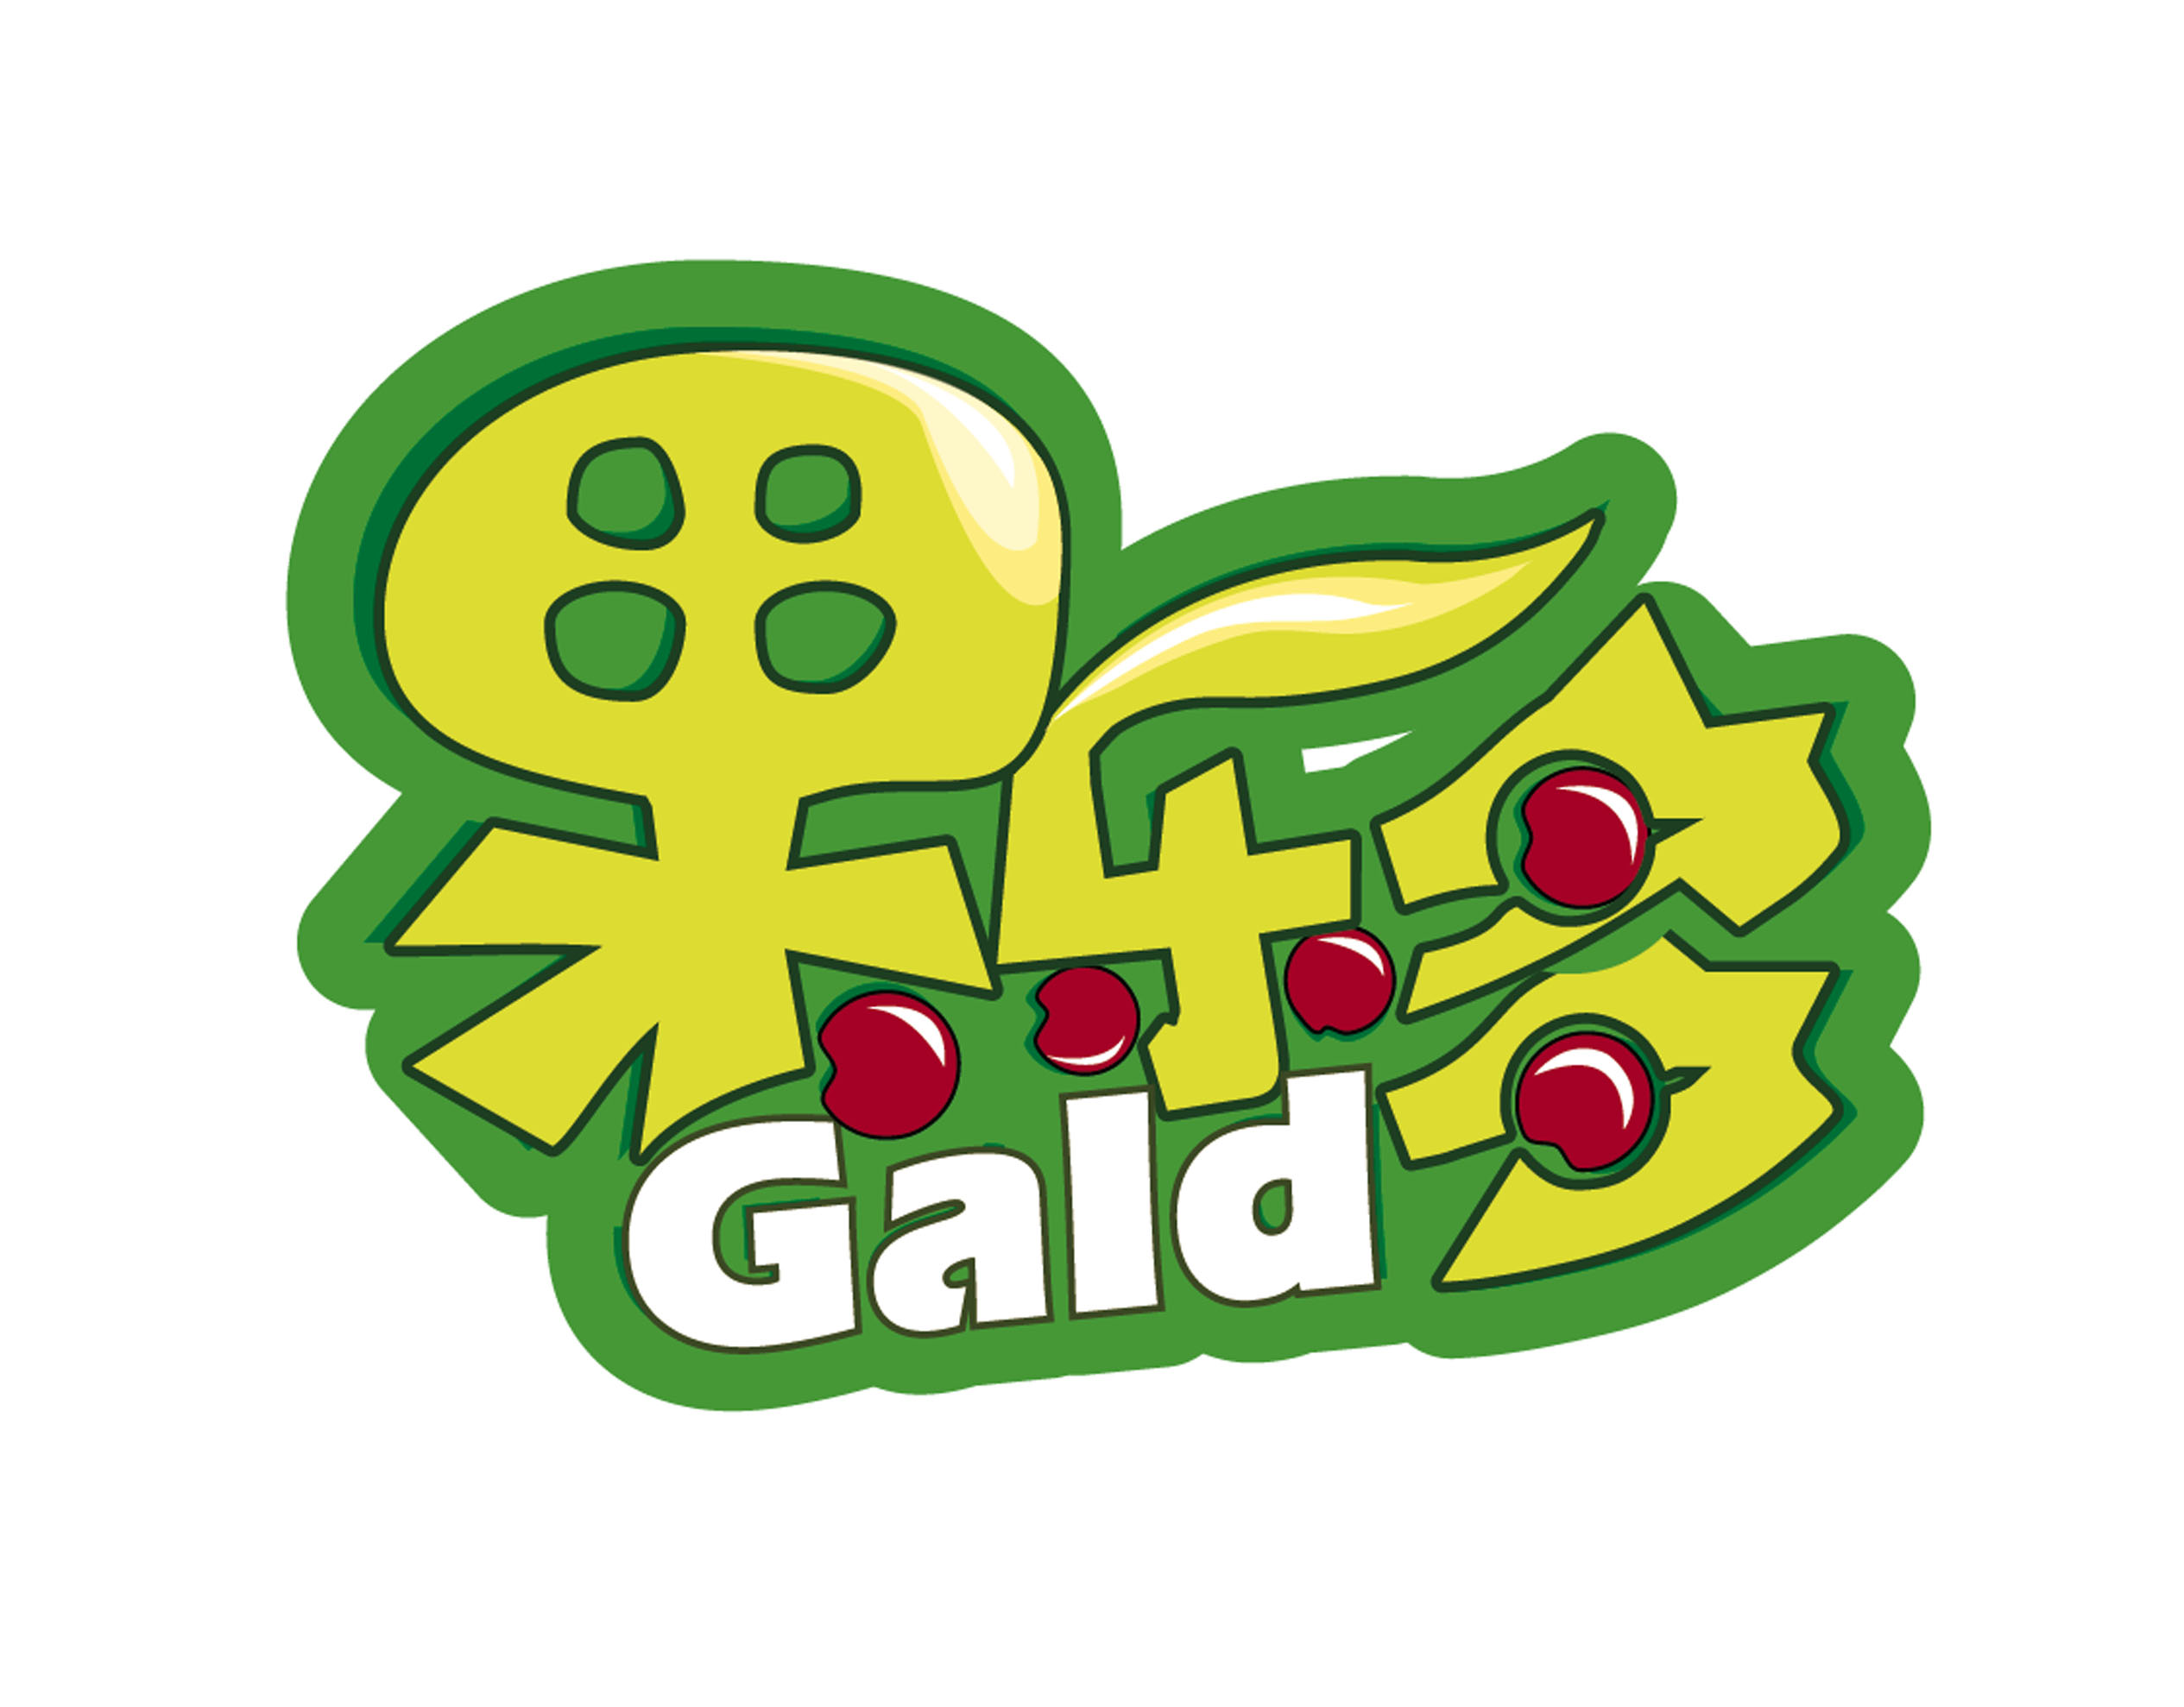 坚果类食品商标logo及产品包装设计